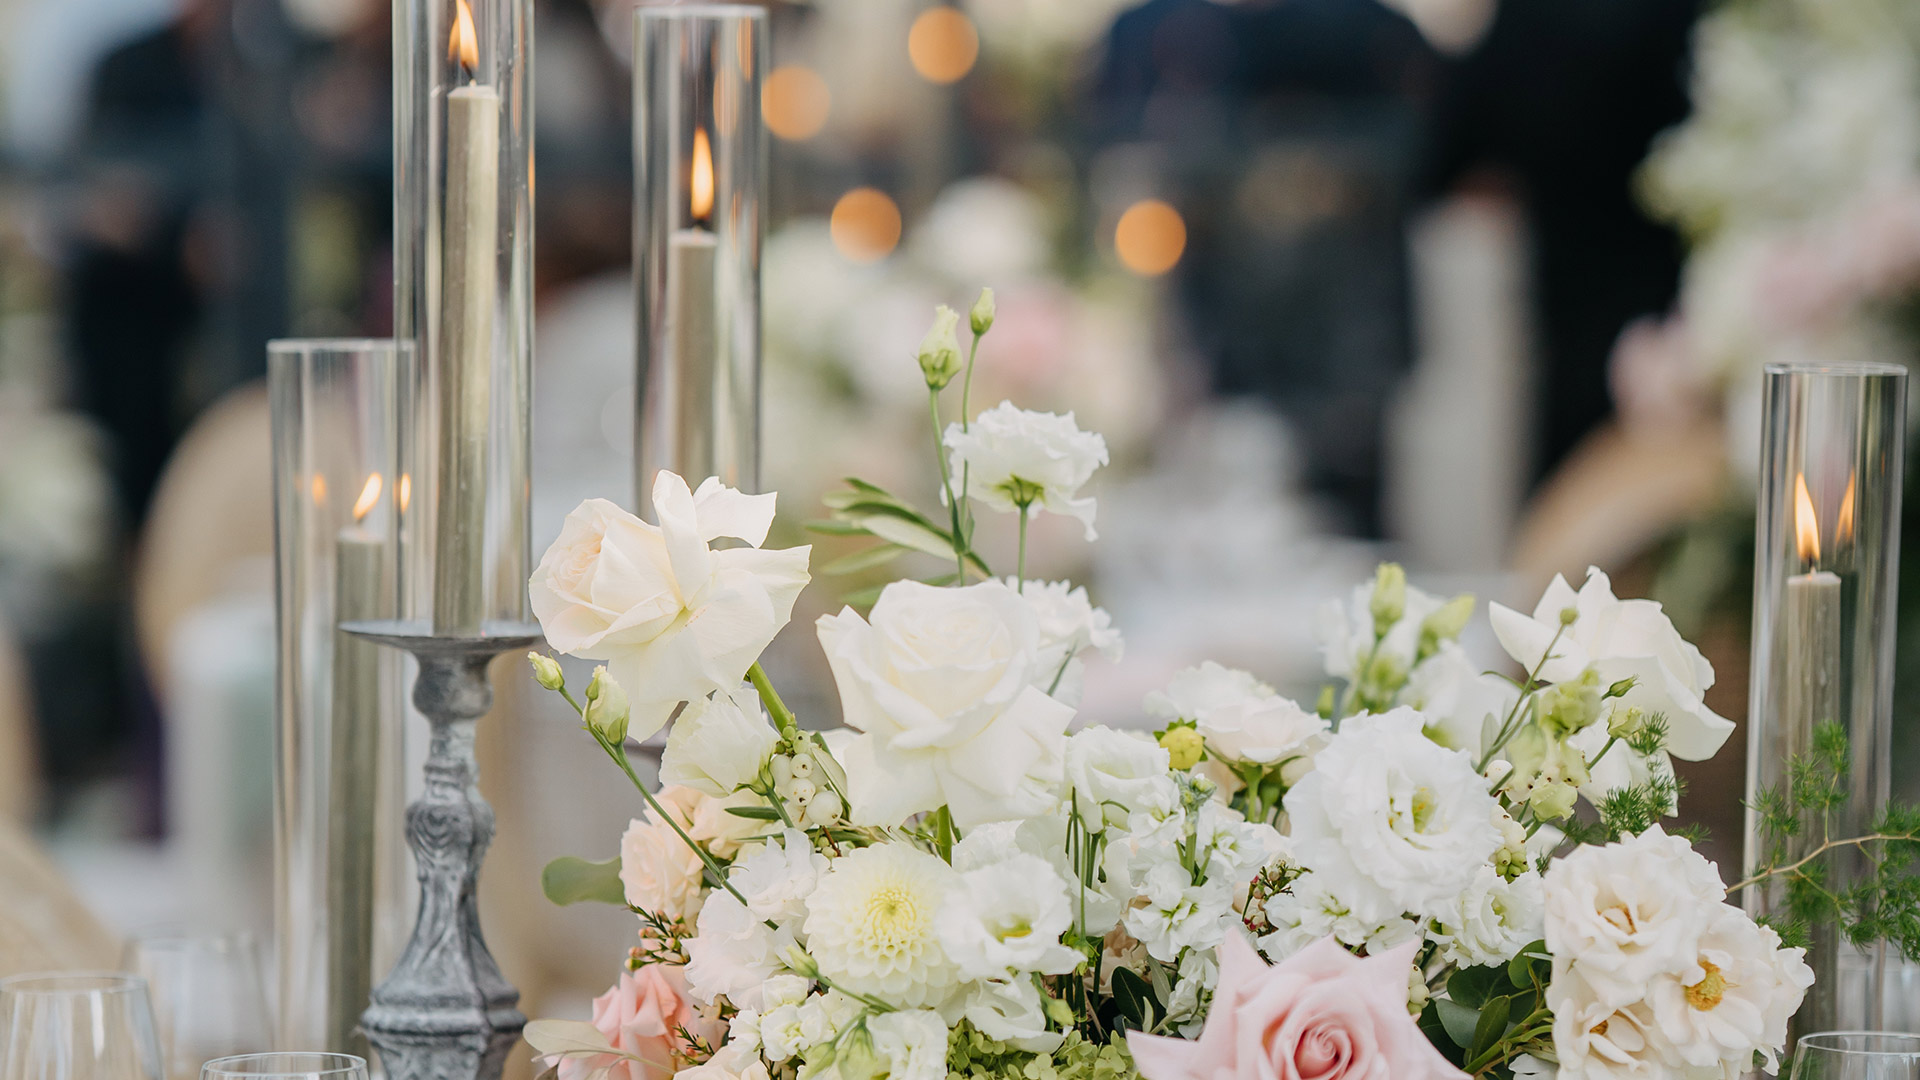 Dekorierter Tisch, mit Blumen, Gläsern und Kerzen